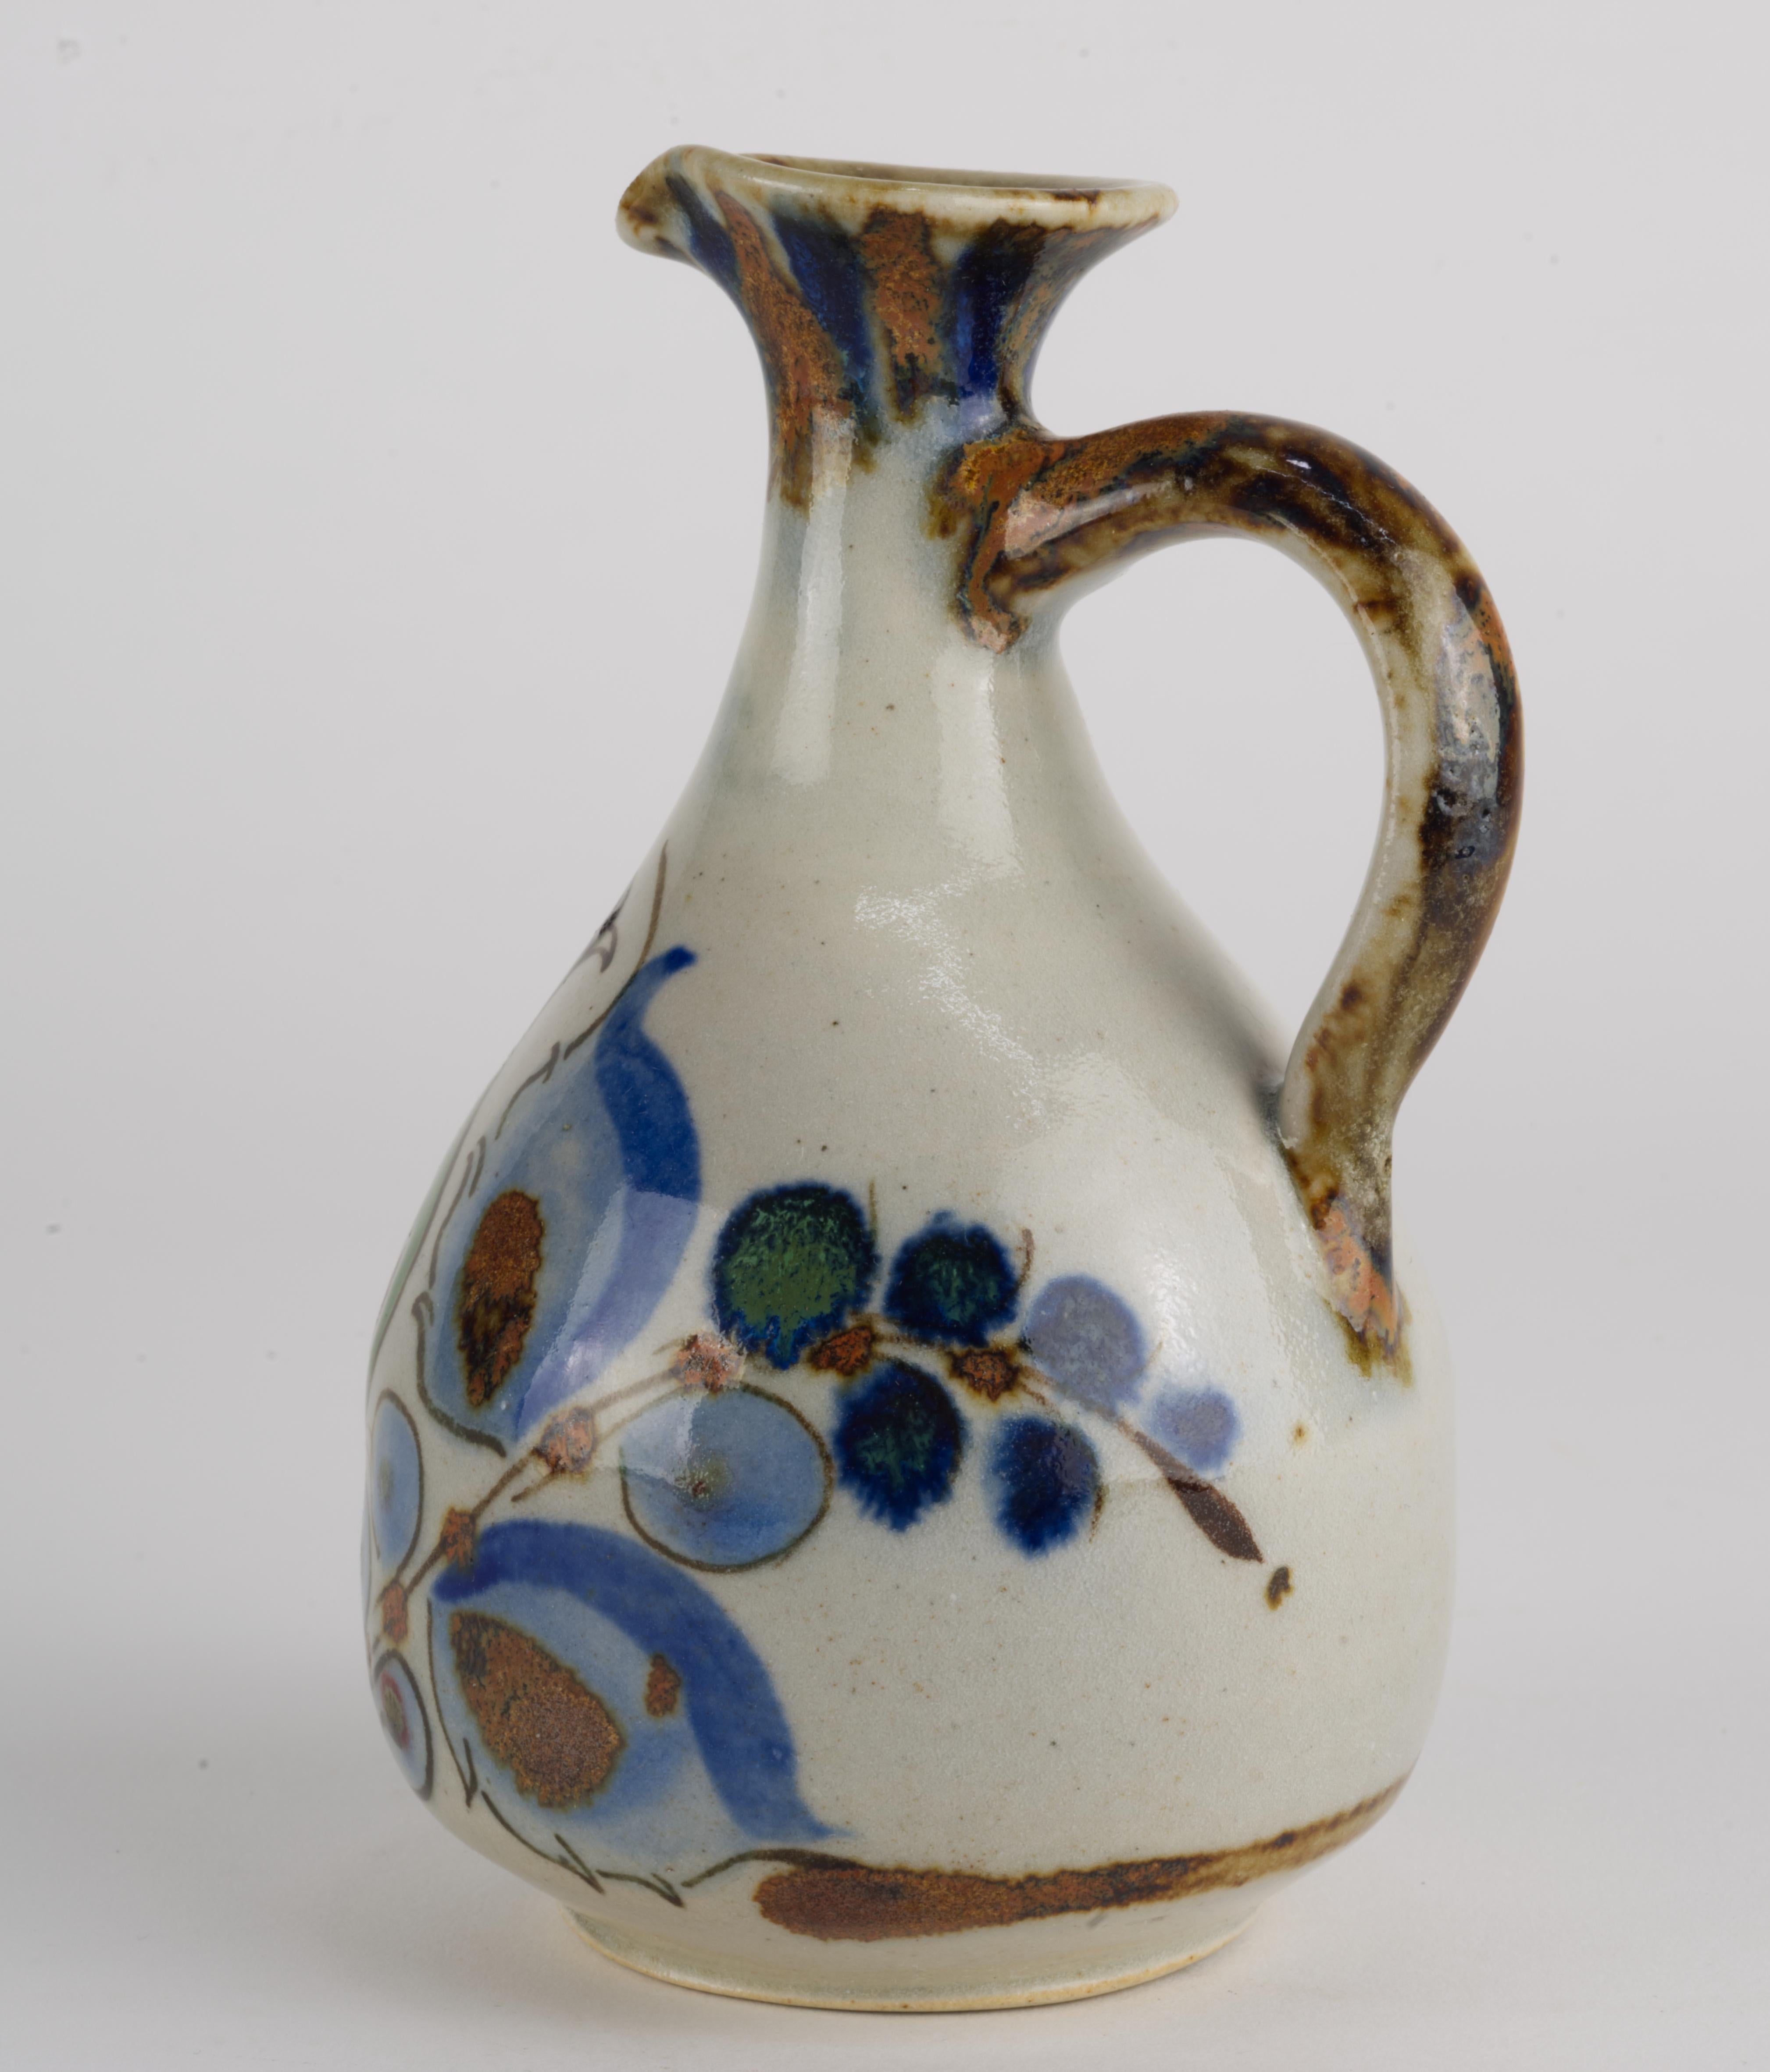  Ce vase vintage en forme d'aiguière a été réalisé à la main par Ken Edwards dans la tradition de la poterie Tonala. Il est décoré d'un oiseau et de fleurs abstraites dans une palette de bleu, de vert et de marron sur un fond gris doux.
